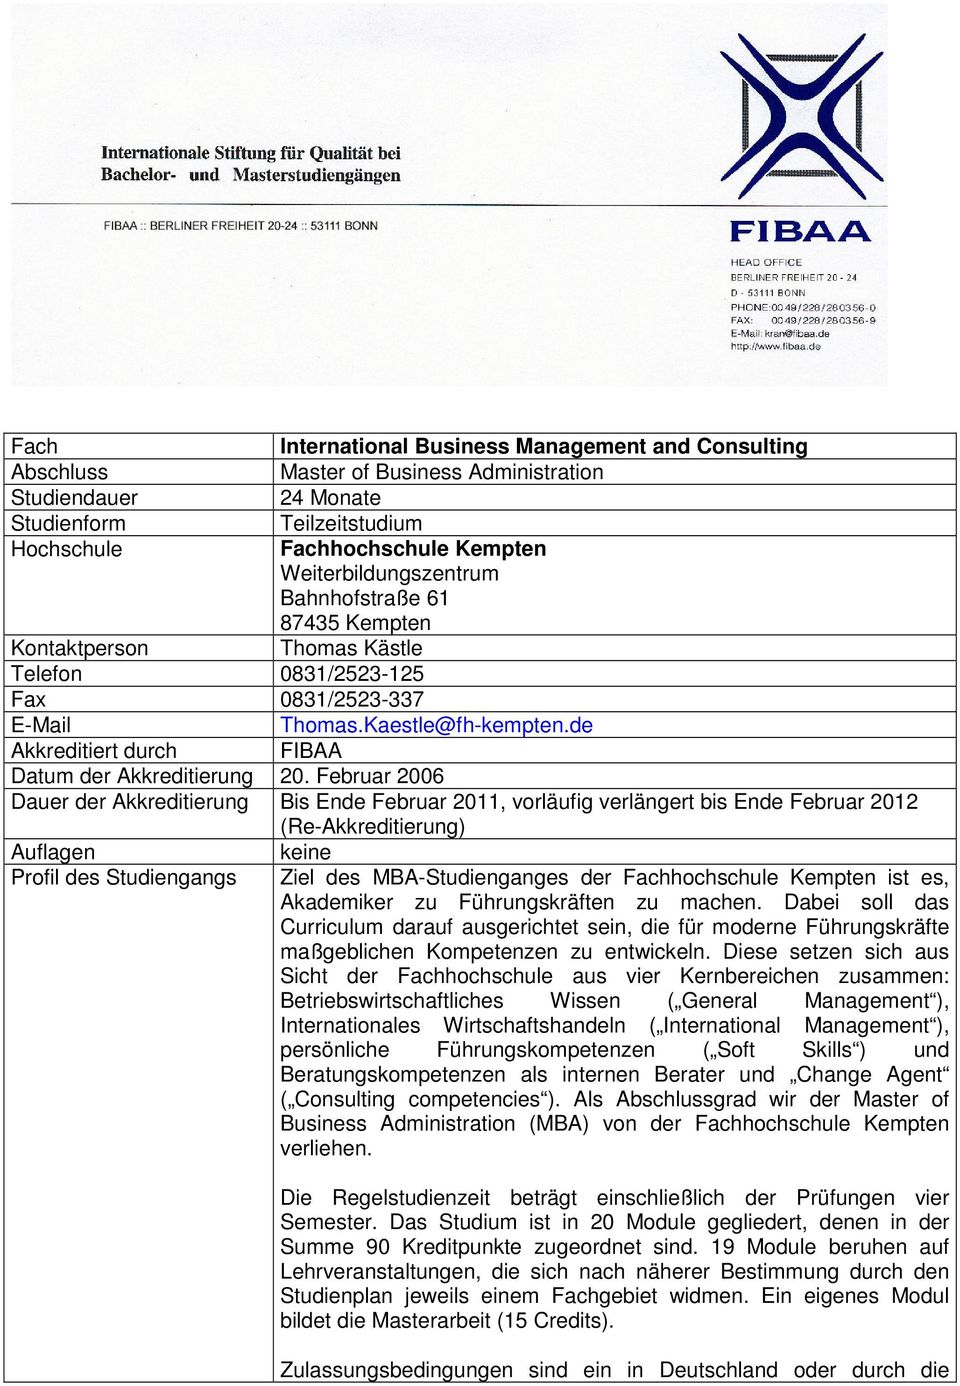 de Akkreditiert durch FIBAA Datum der Akkreditierung 20.